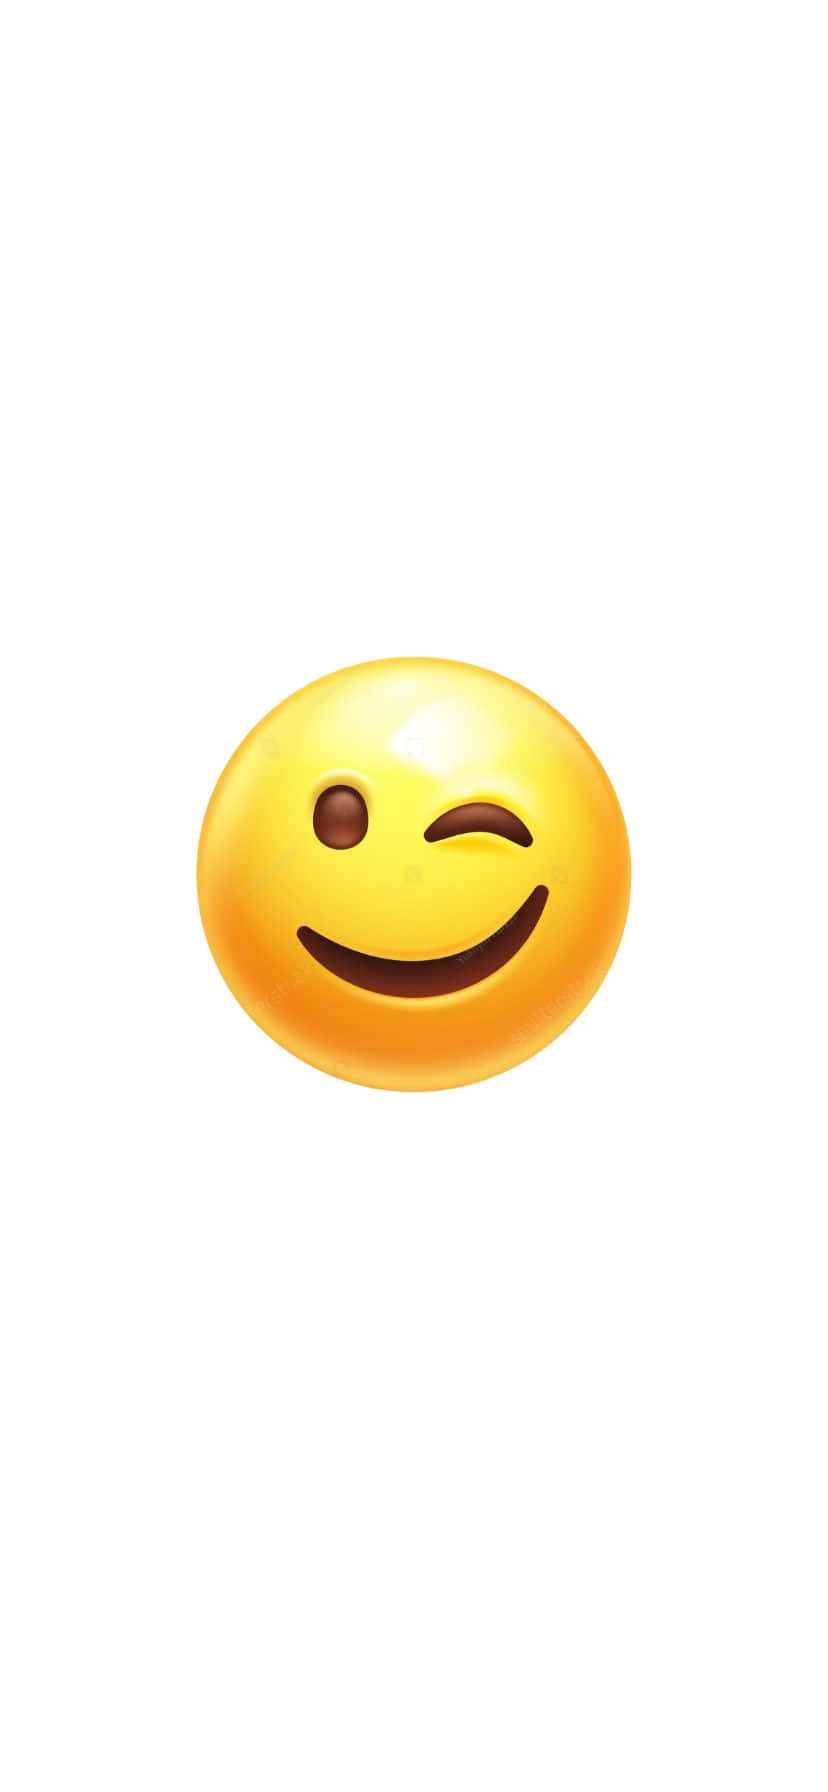 Winking Face Emoji Smile Wallpaper